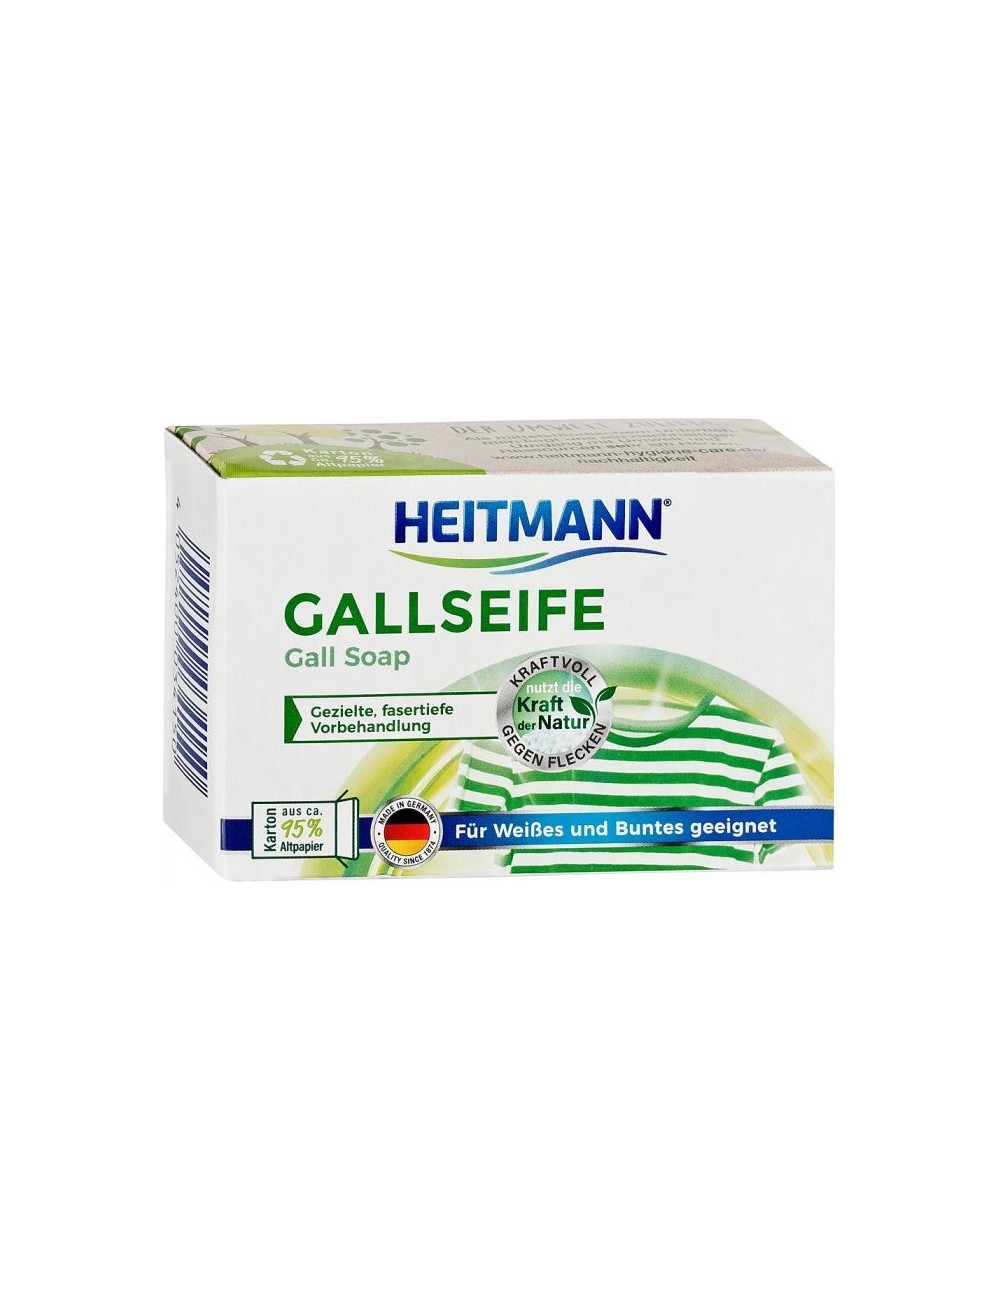 Heitmann Gallseife Niemieckie Mydełko na Plamy 100 g